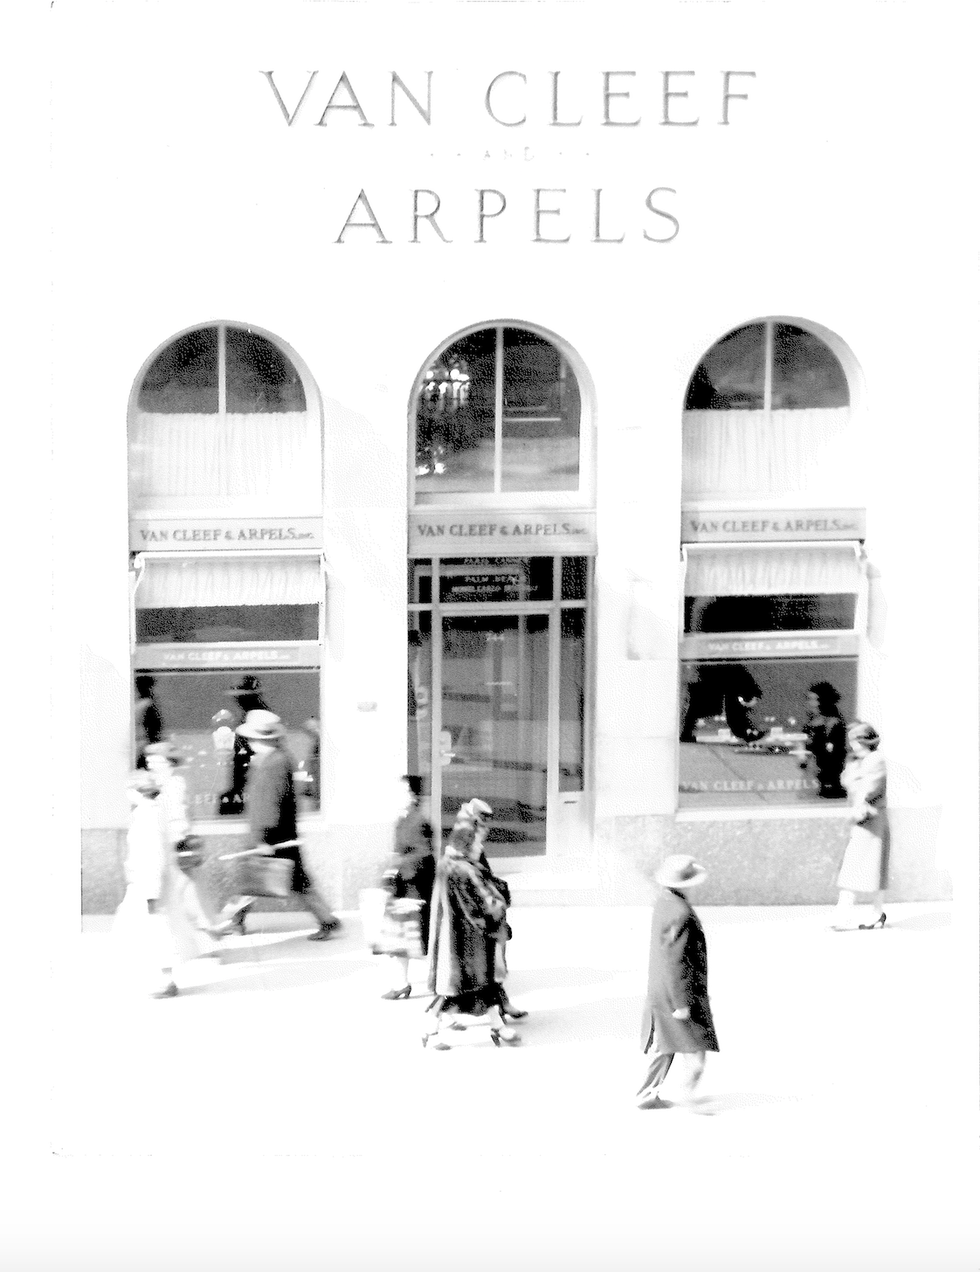 Van Cleef & Arpels' Famous Clientele